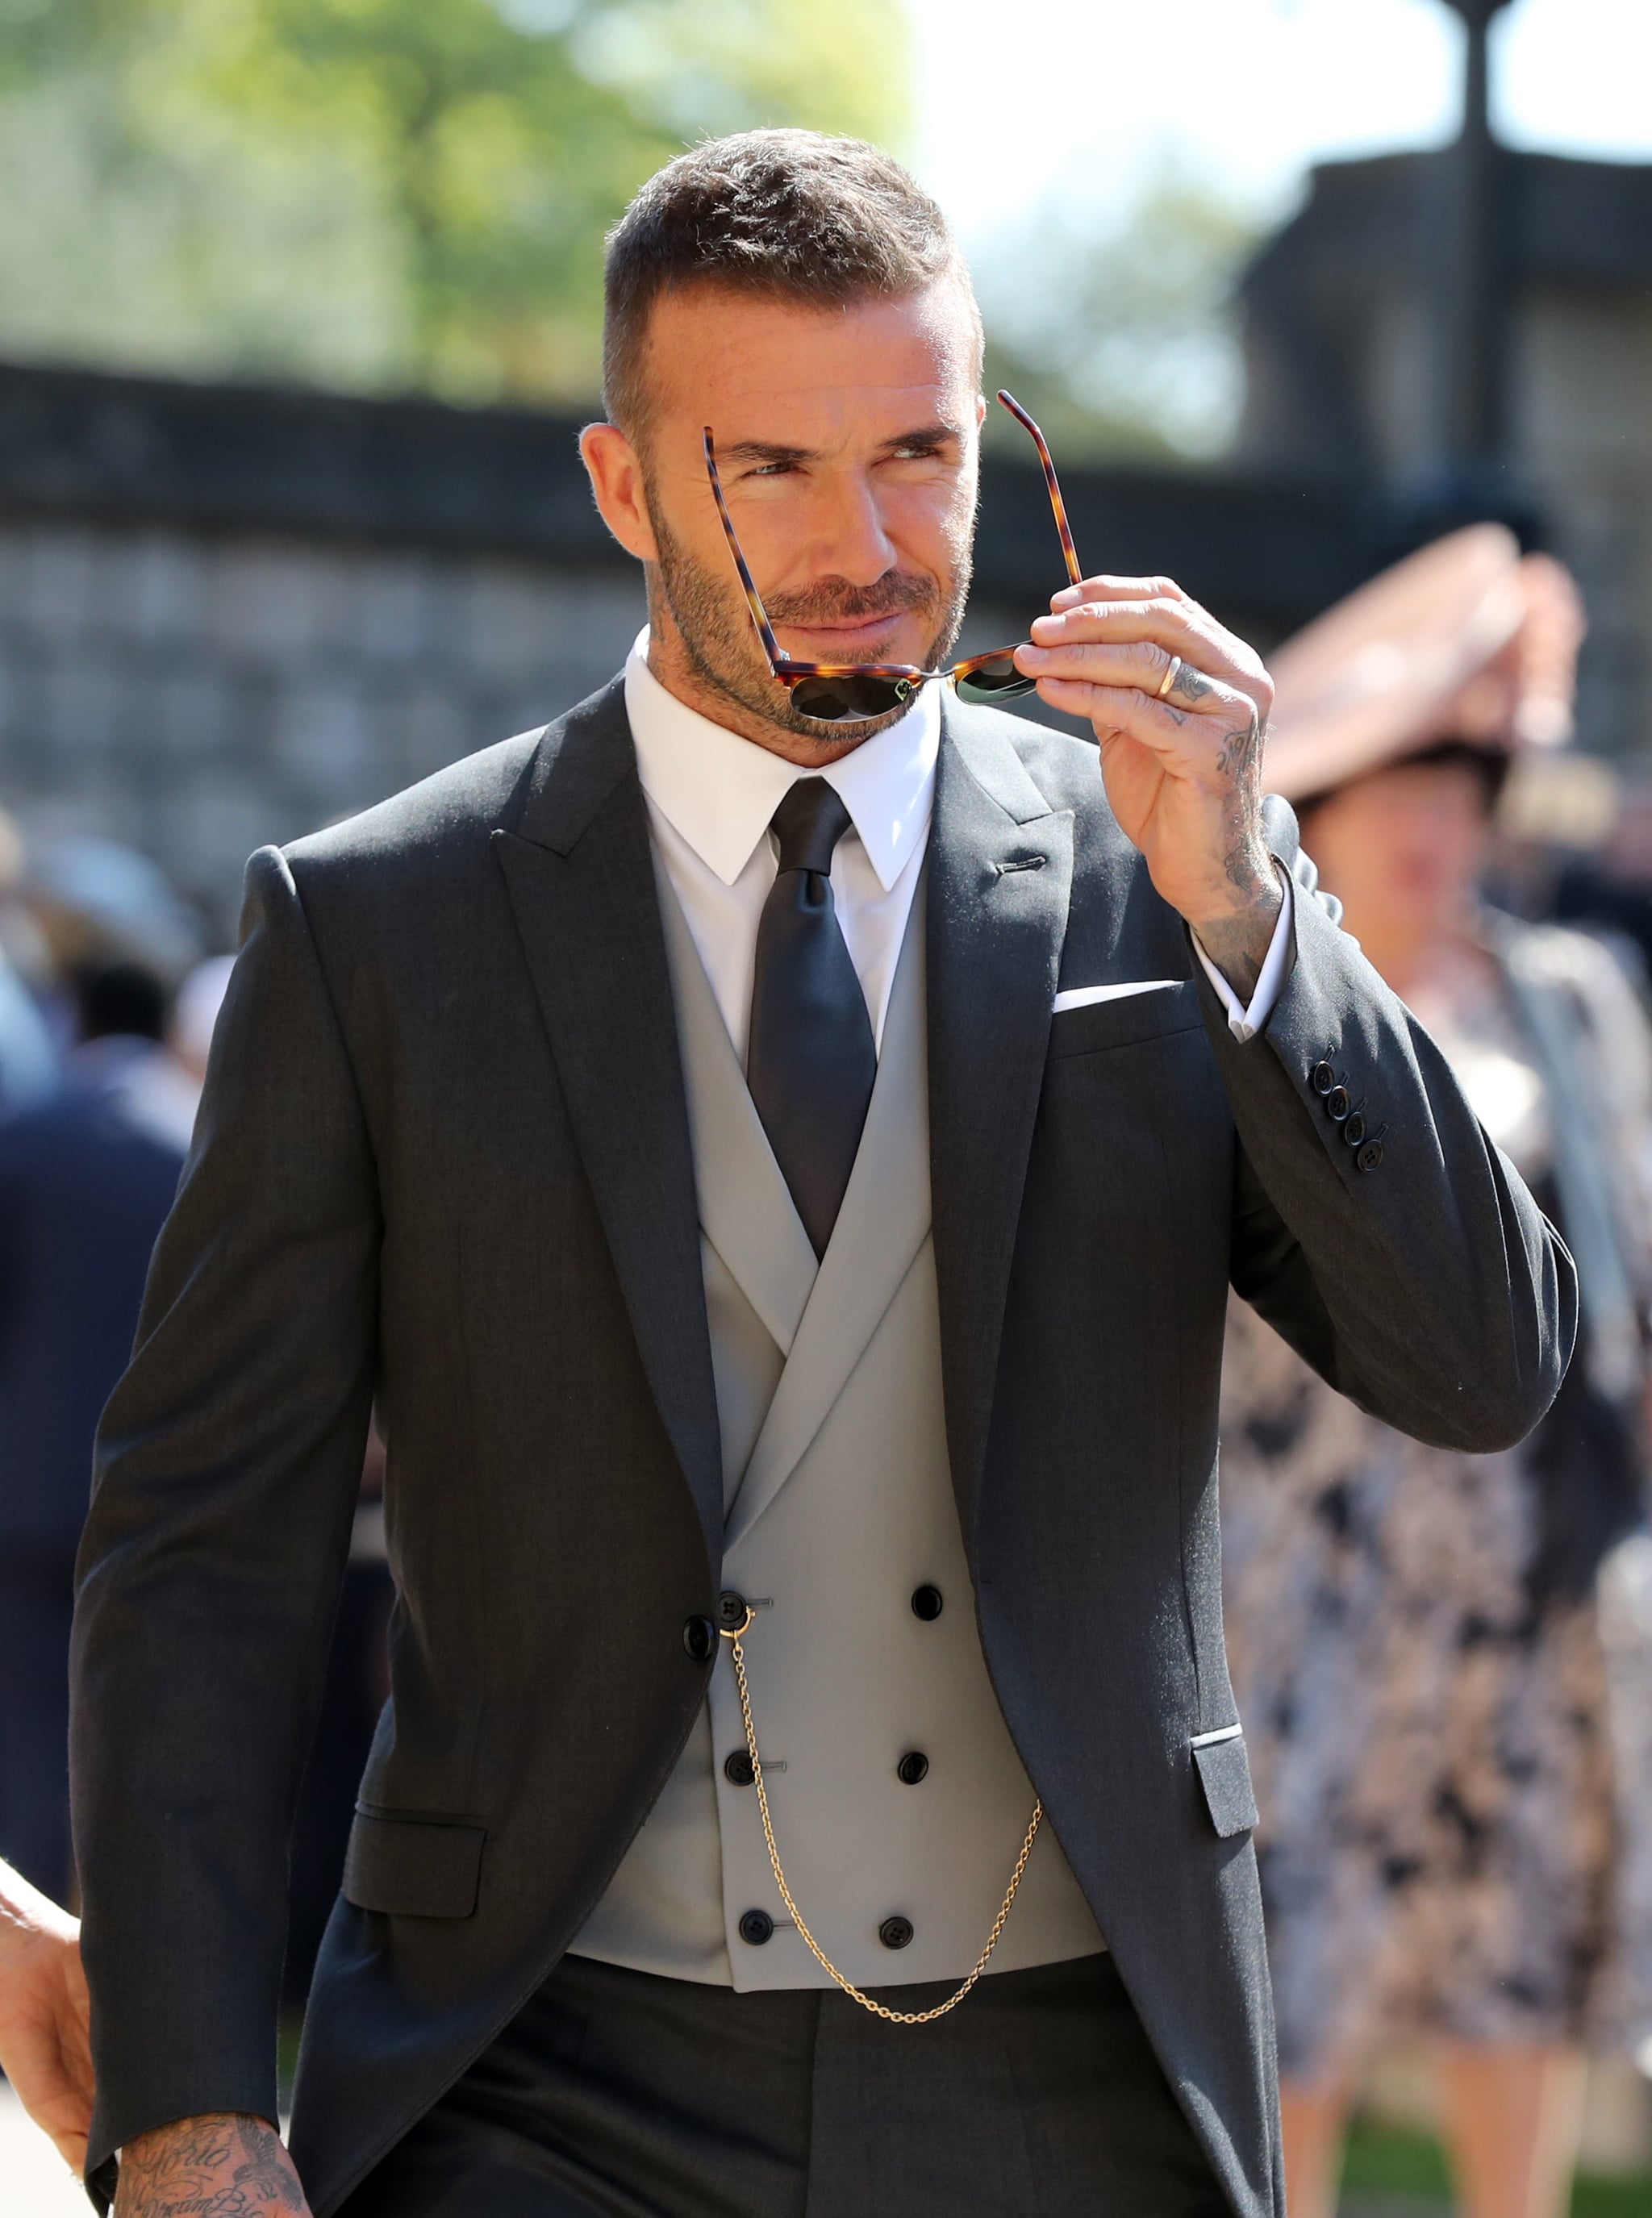 David Beckham at Royal Wedding 2018 Pictures | POPSUGAR Celebrity